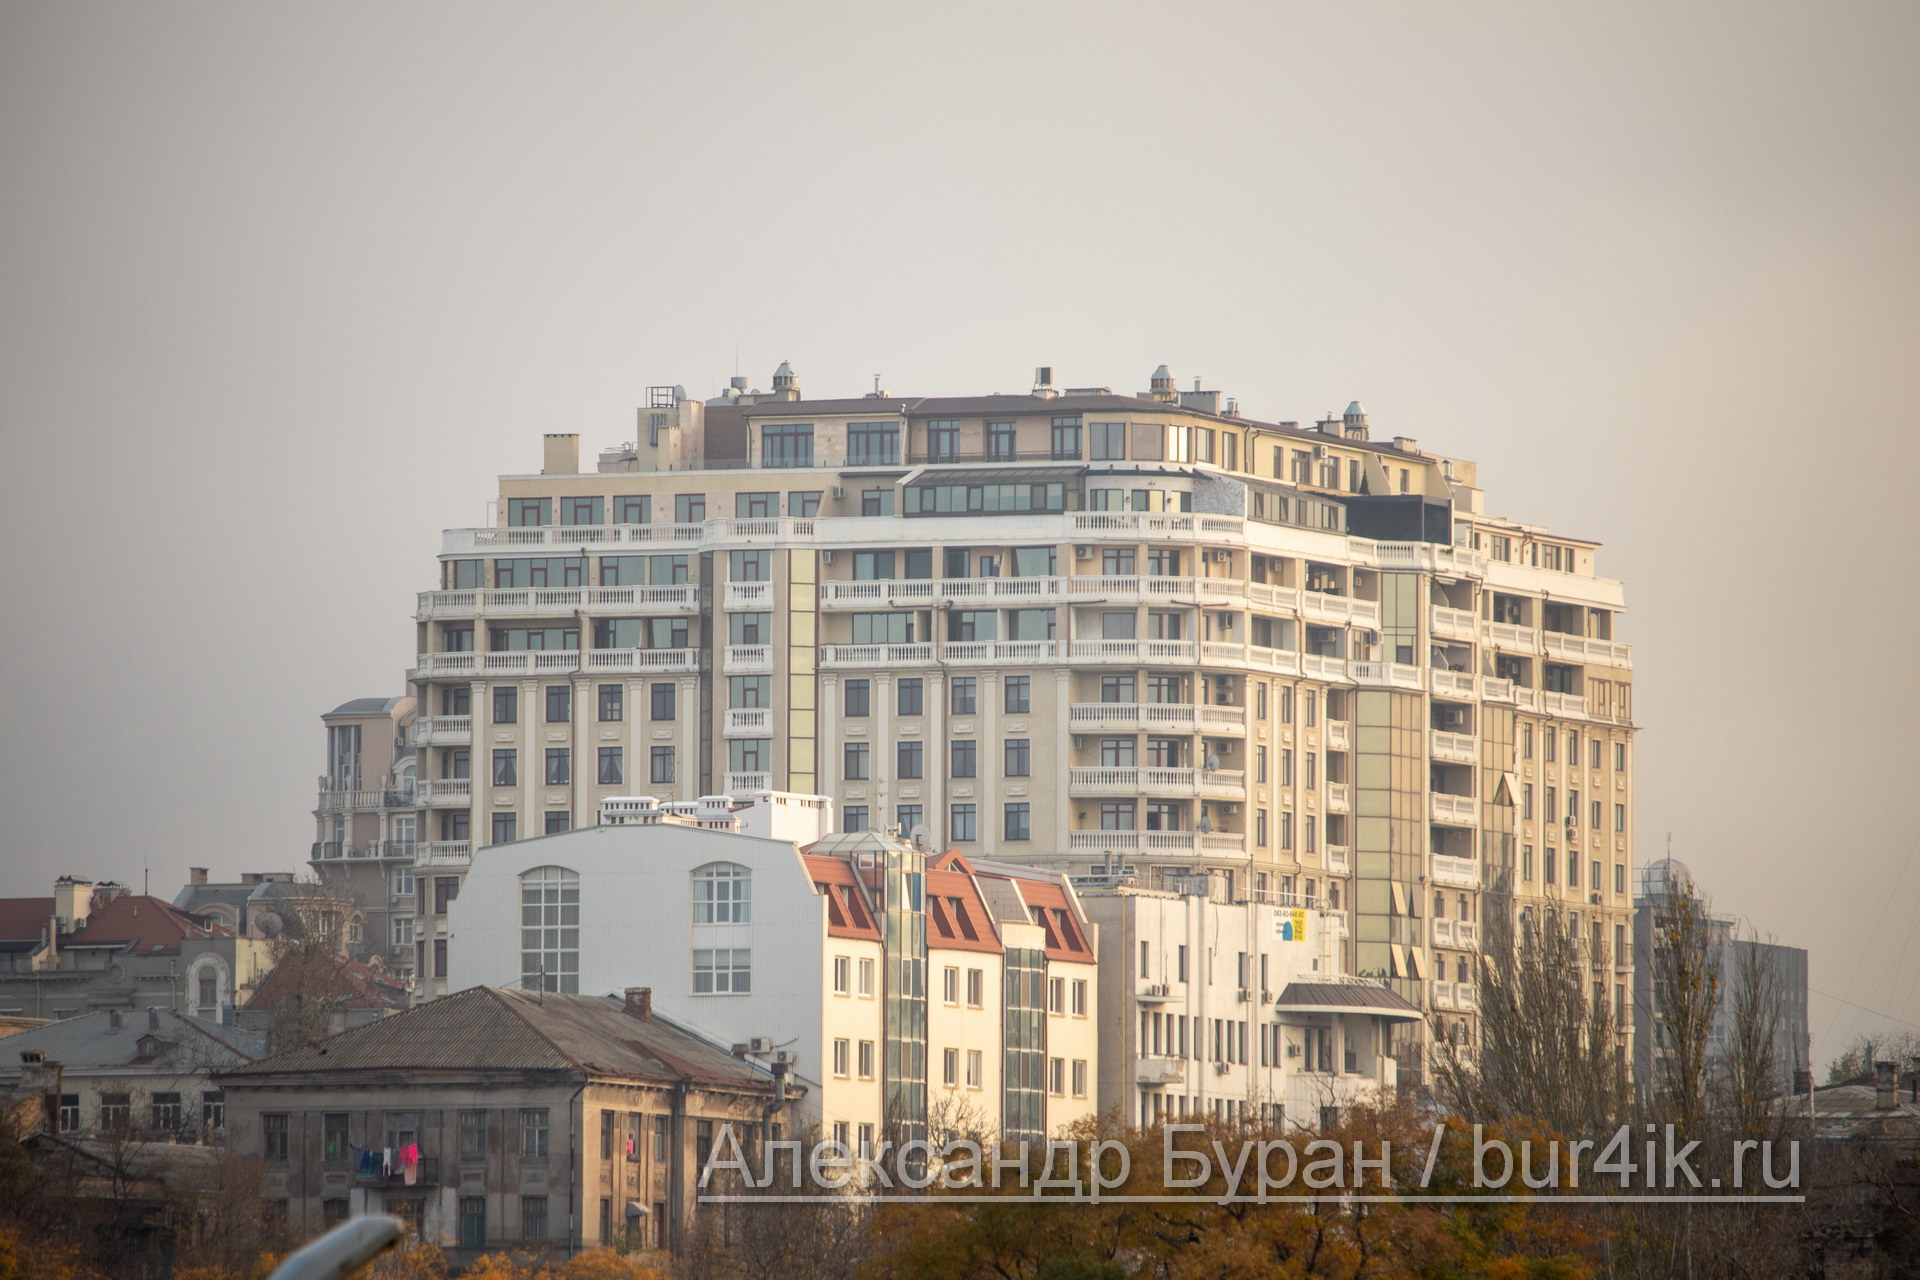 Вид на многоэтажный жилой дом с территории морского порта - Украина, Одесса, 09,11,2019